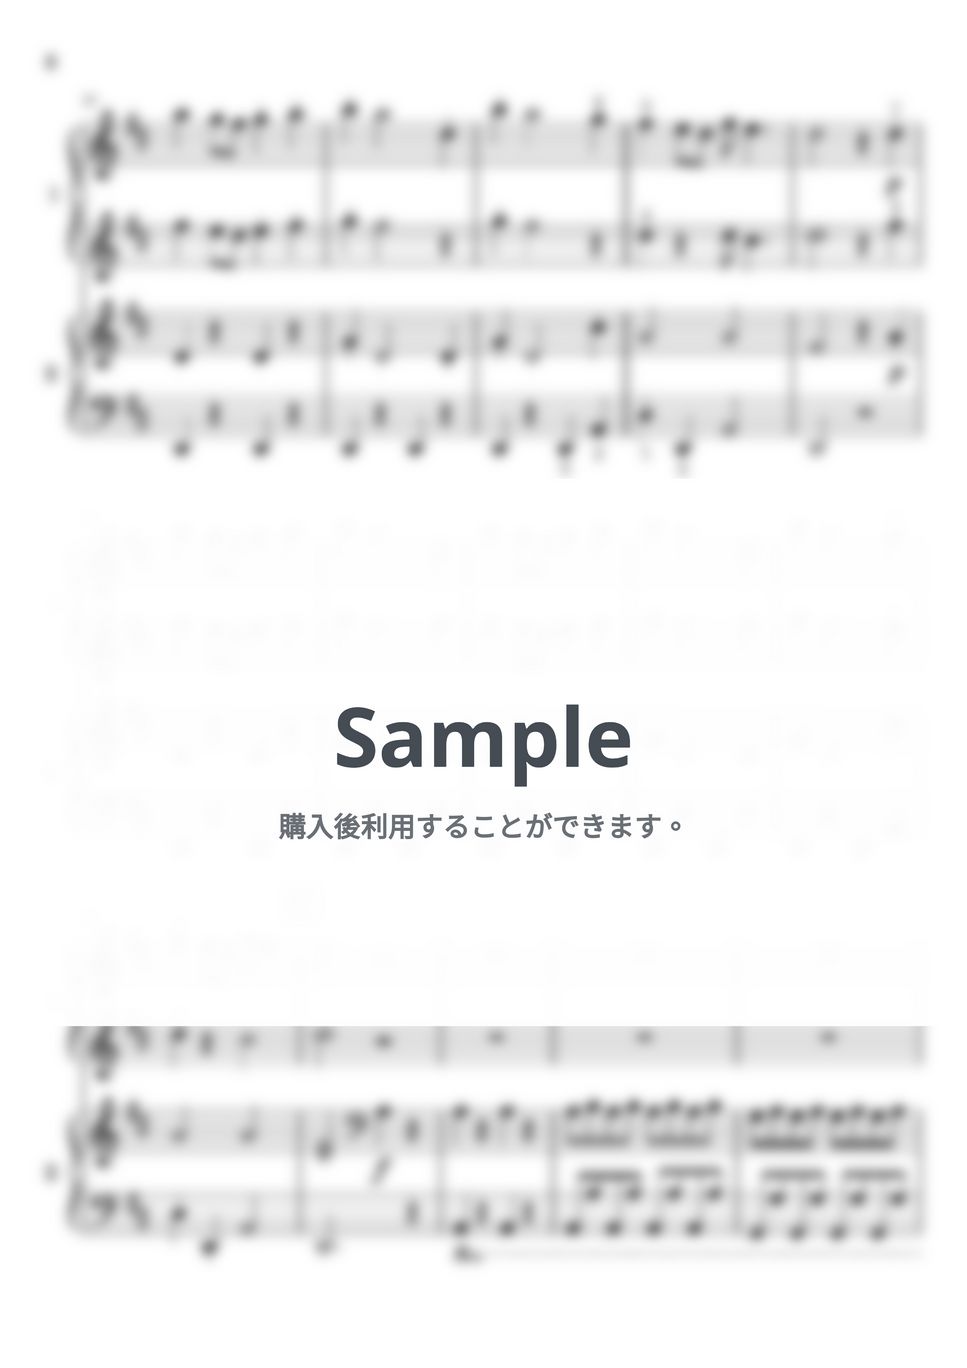 ビバルディ - 春 (～四季より～ /ピアノ連弾/中級) by 三葛朋子（T.Mikatsura）